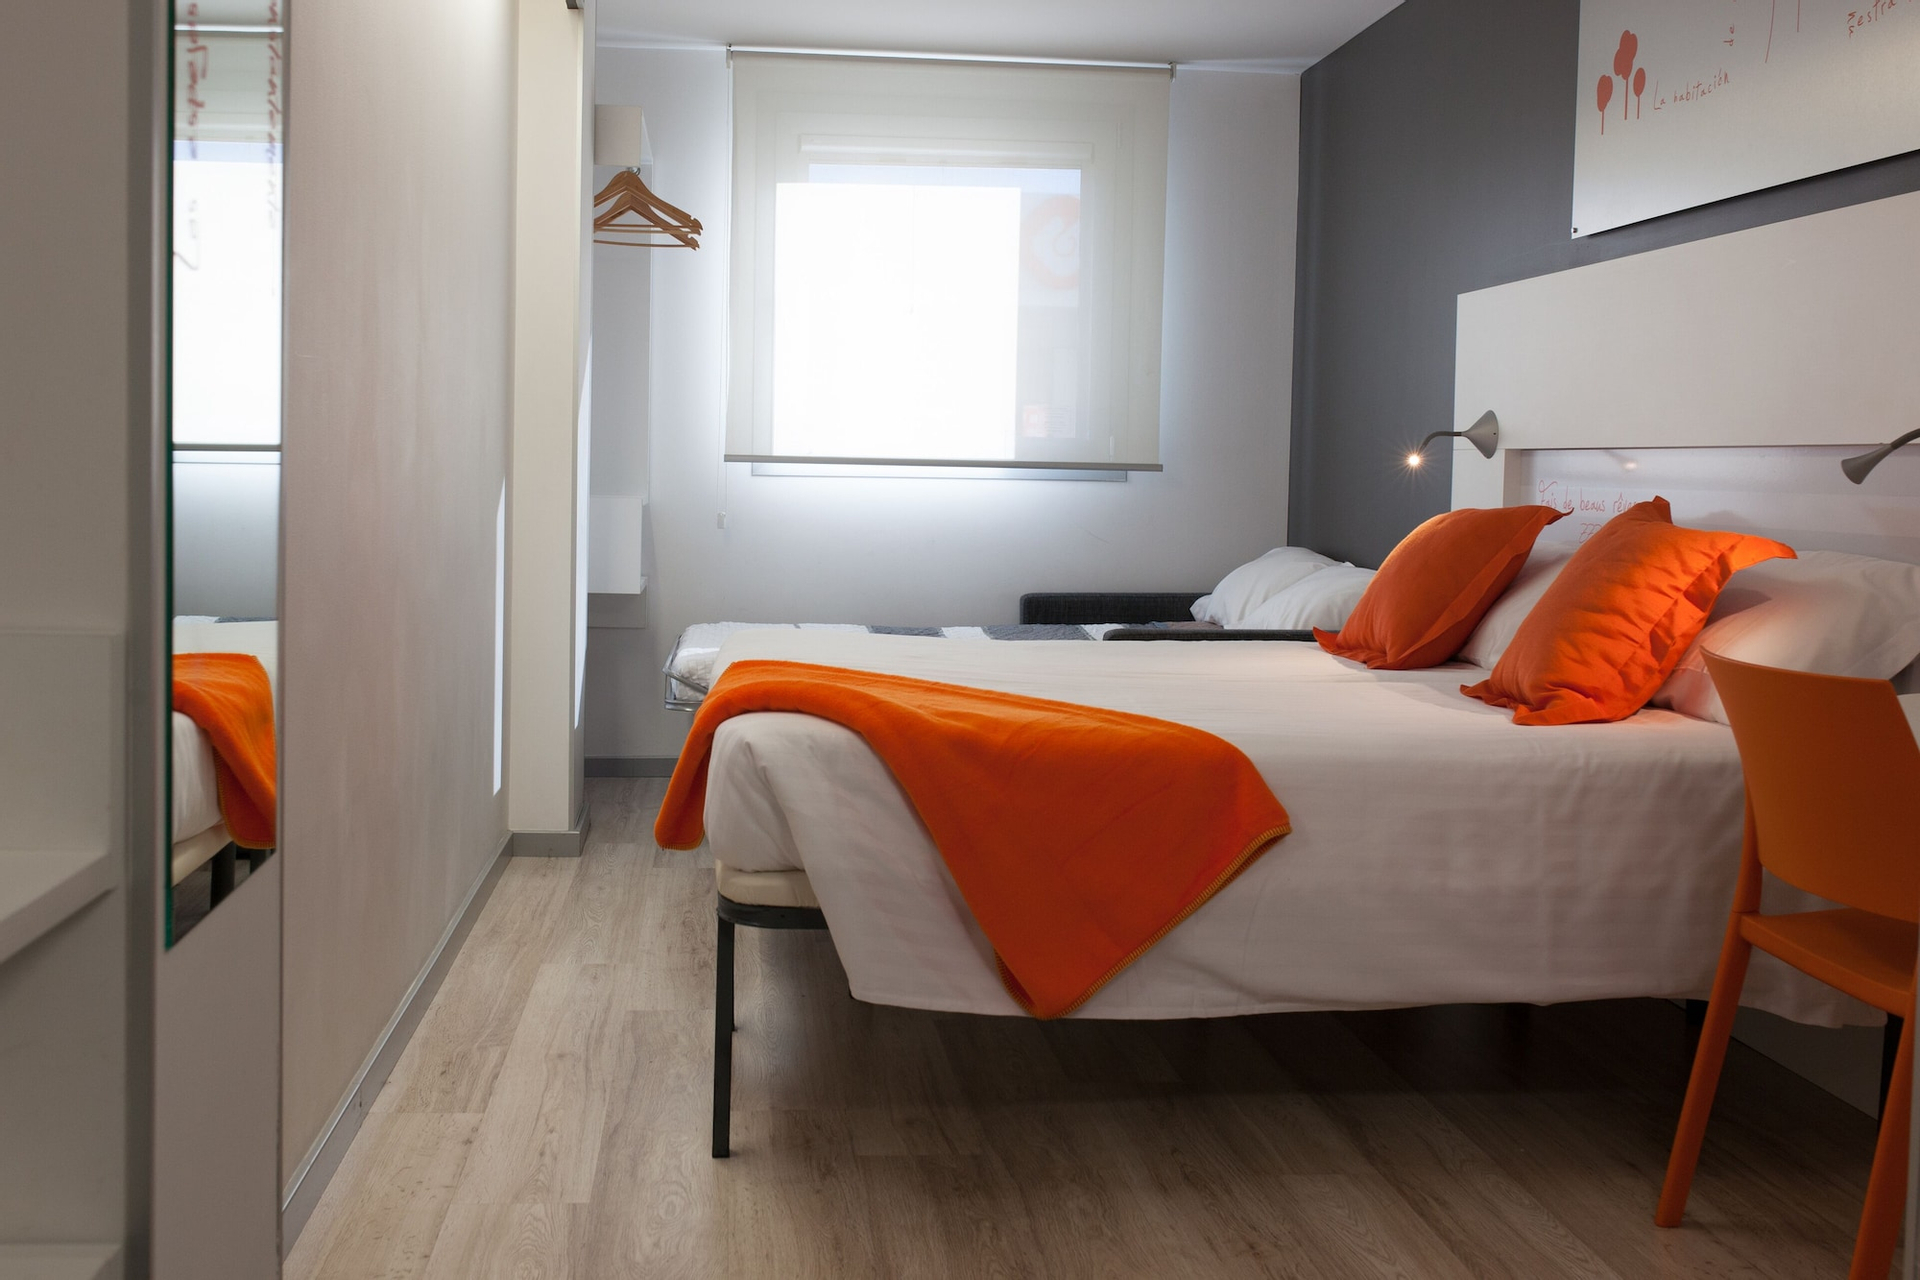 Bedroom 4, Bed4u Pamplona, Navarra